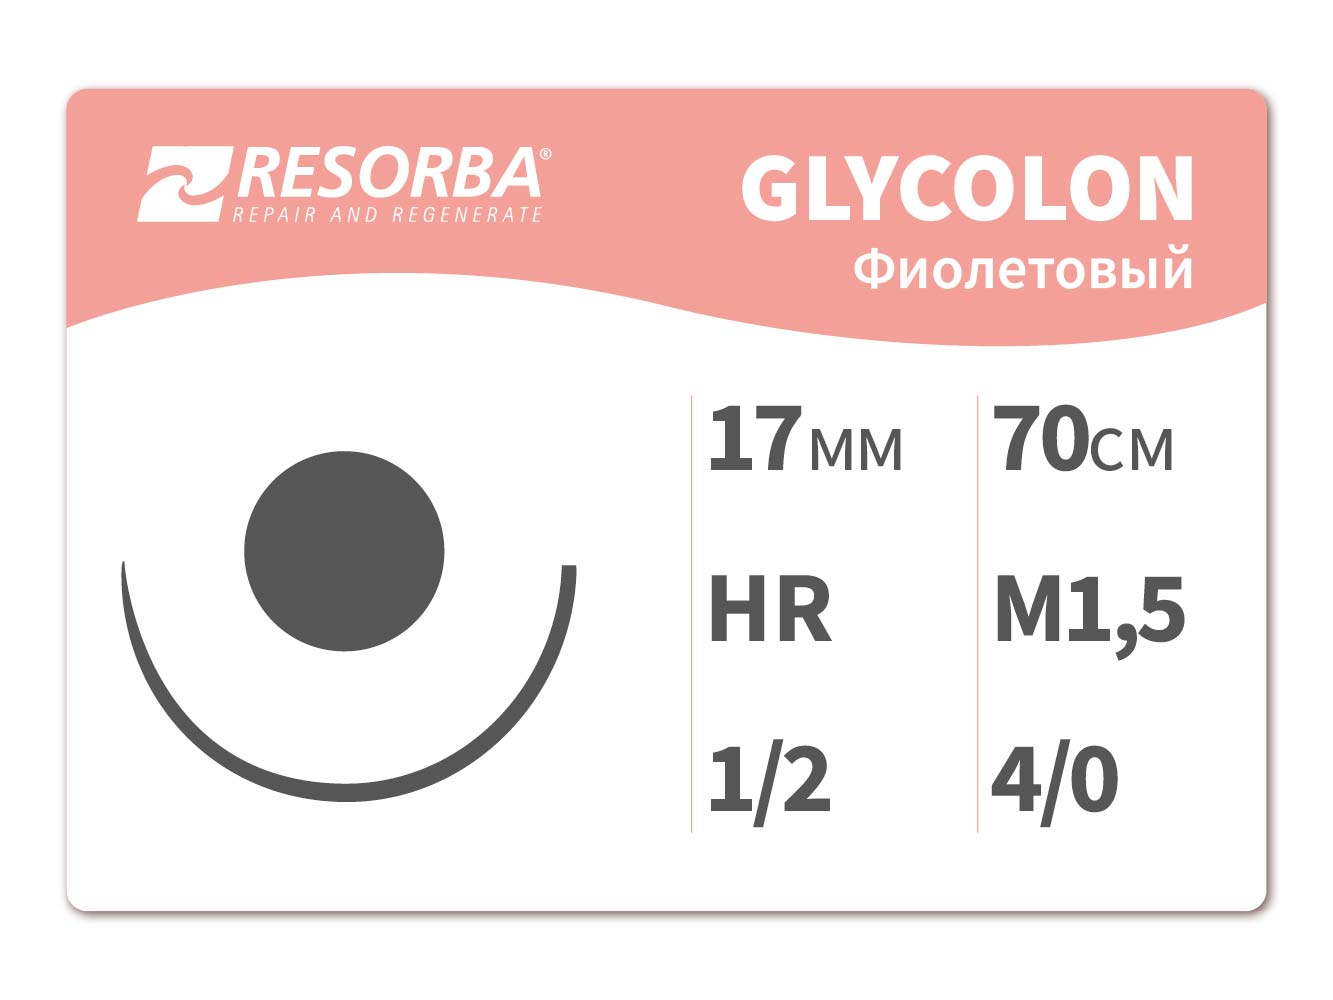 40202 Гликолон фиолетовый М1.5, (4/0), 70см, HR 17.PB, Ресорба/RESORBA (Германия)